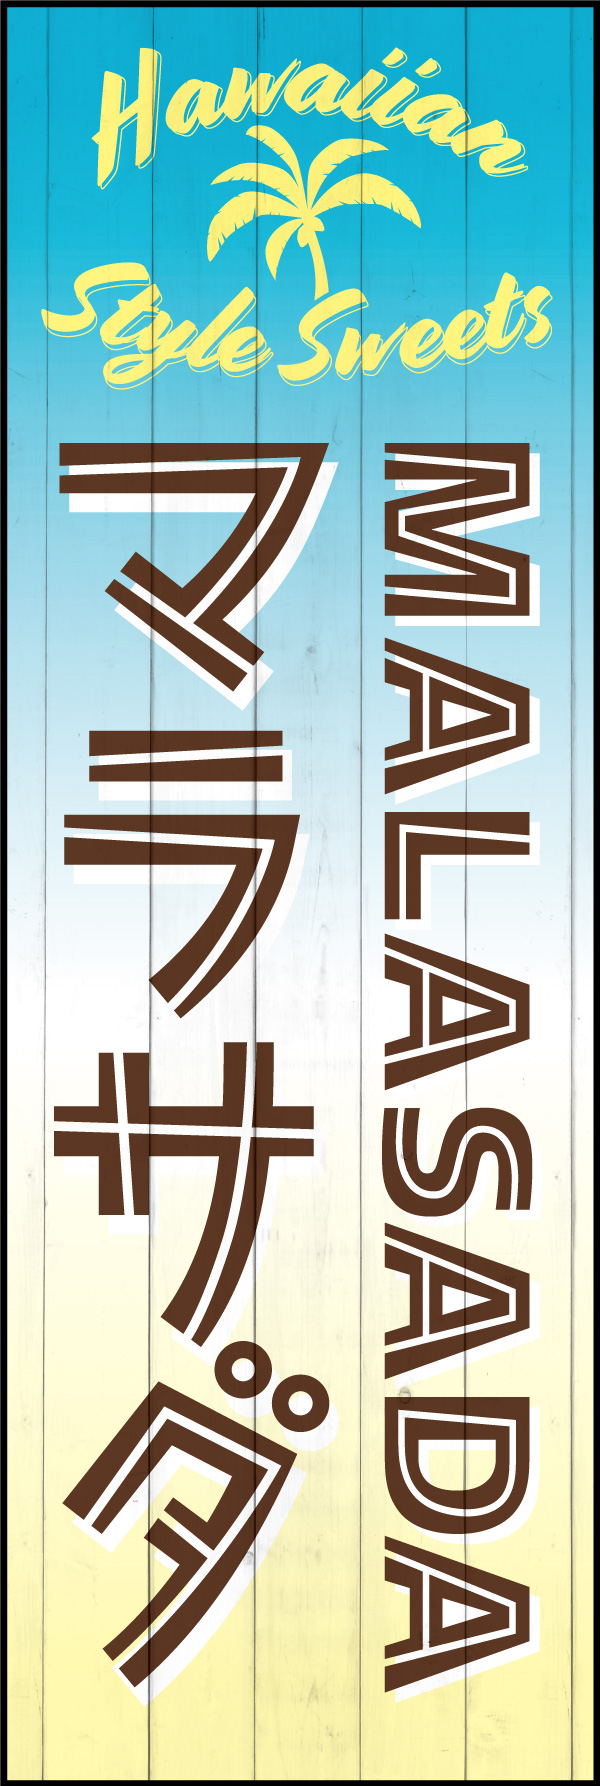 マラサダ 155_01「マラサダ（MARASADA）」ののぼりです。日本ではハワイの印象が強いため、わかりやすく「HAWAIIAN STYLE SWEETS」と表記しました。（Y.M） 